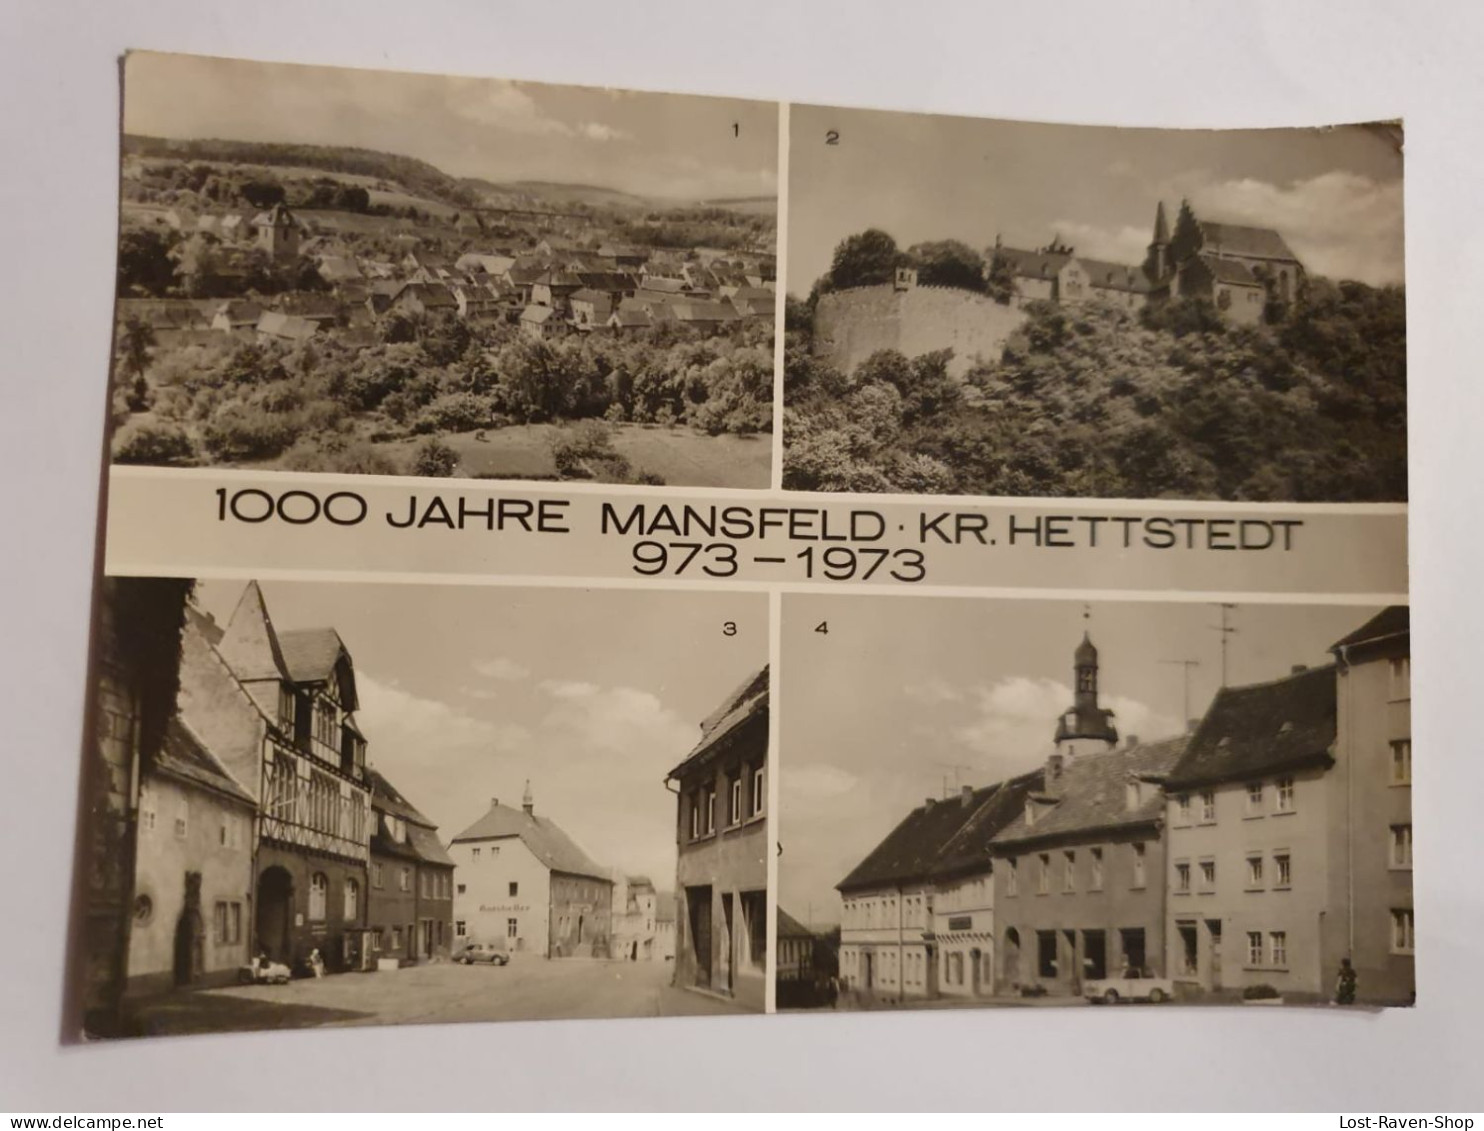 1000 Jahre Mansfeld - Mansfeld